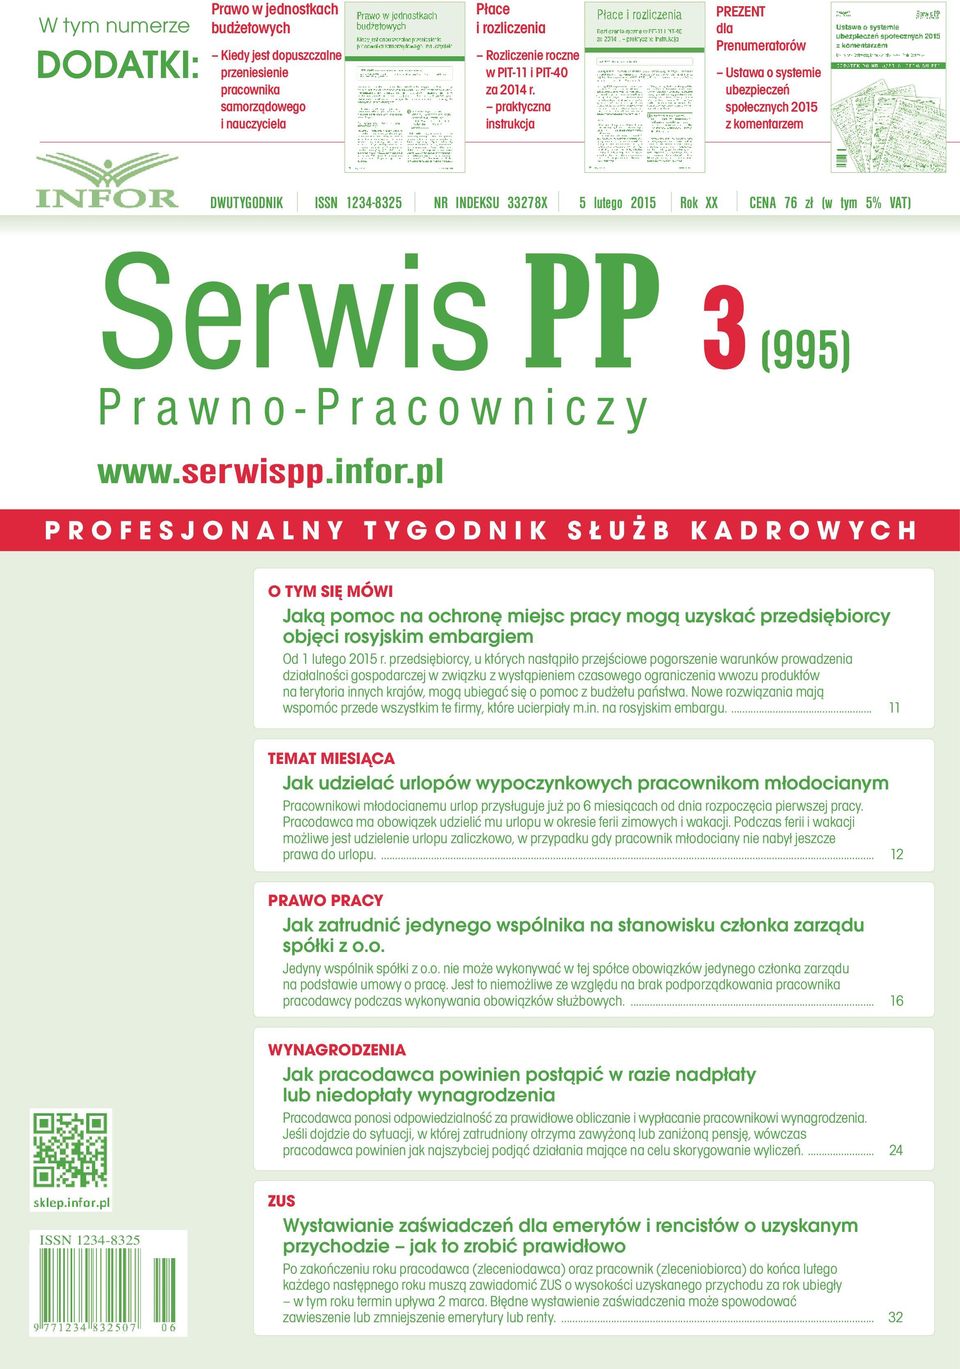 VAT) Serwis PP 3 Prawno-Pracowniczy (995) www.serwispp.infor.